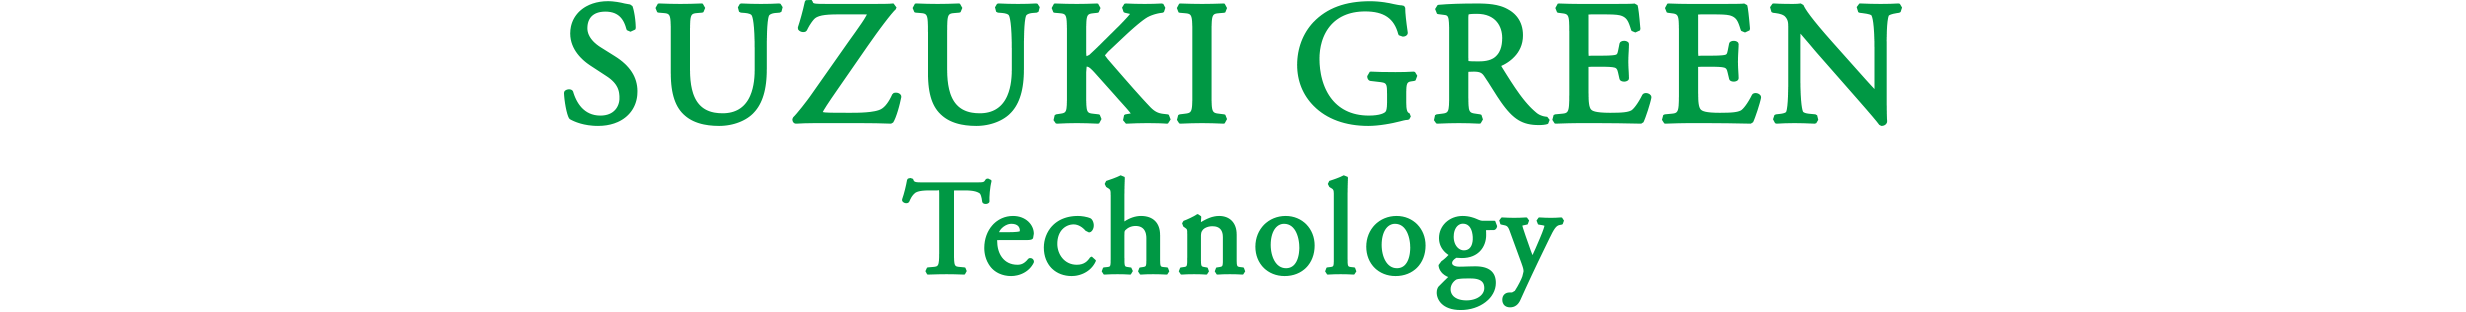 SUZUKI GREEN Technology